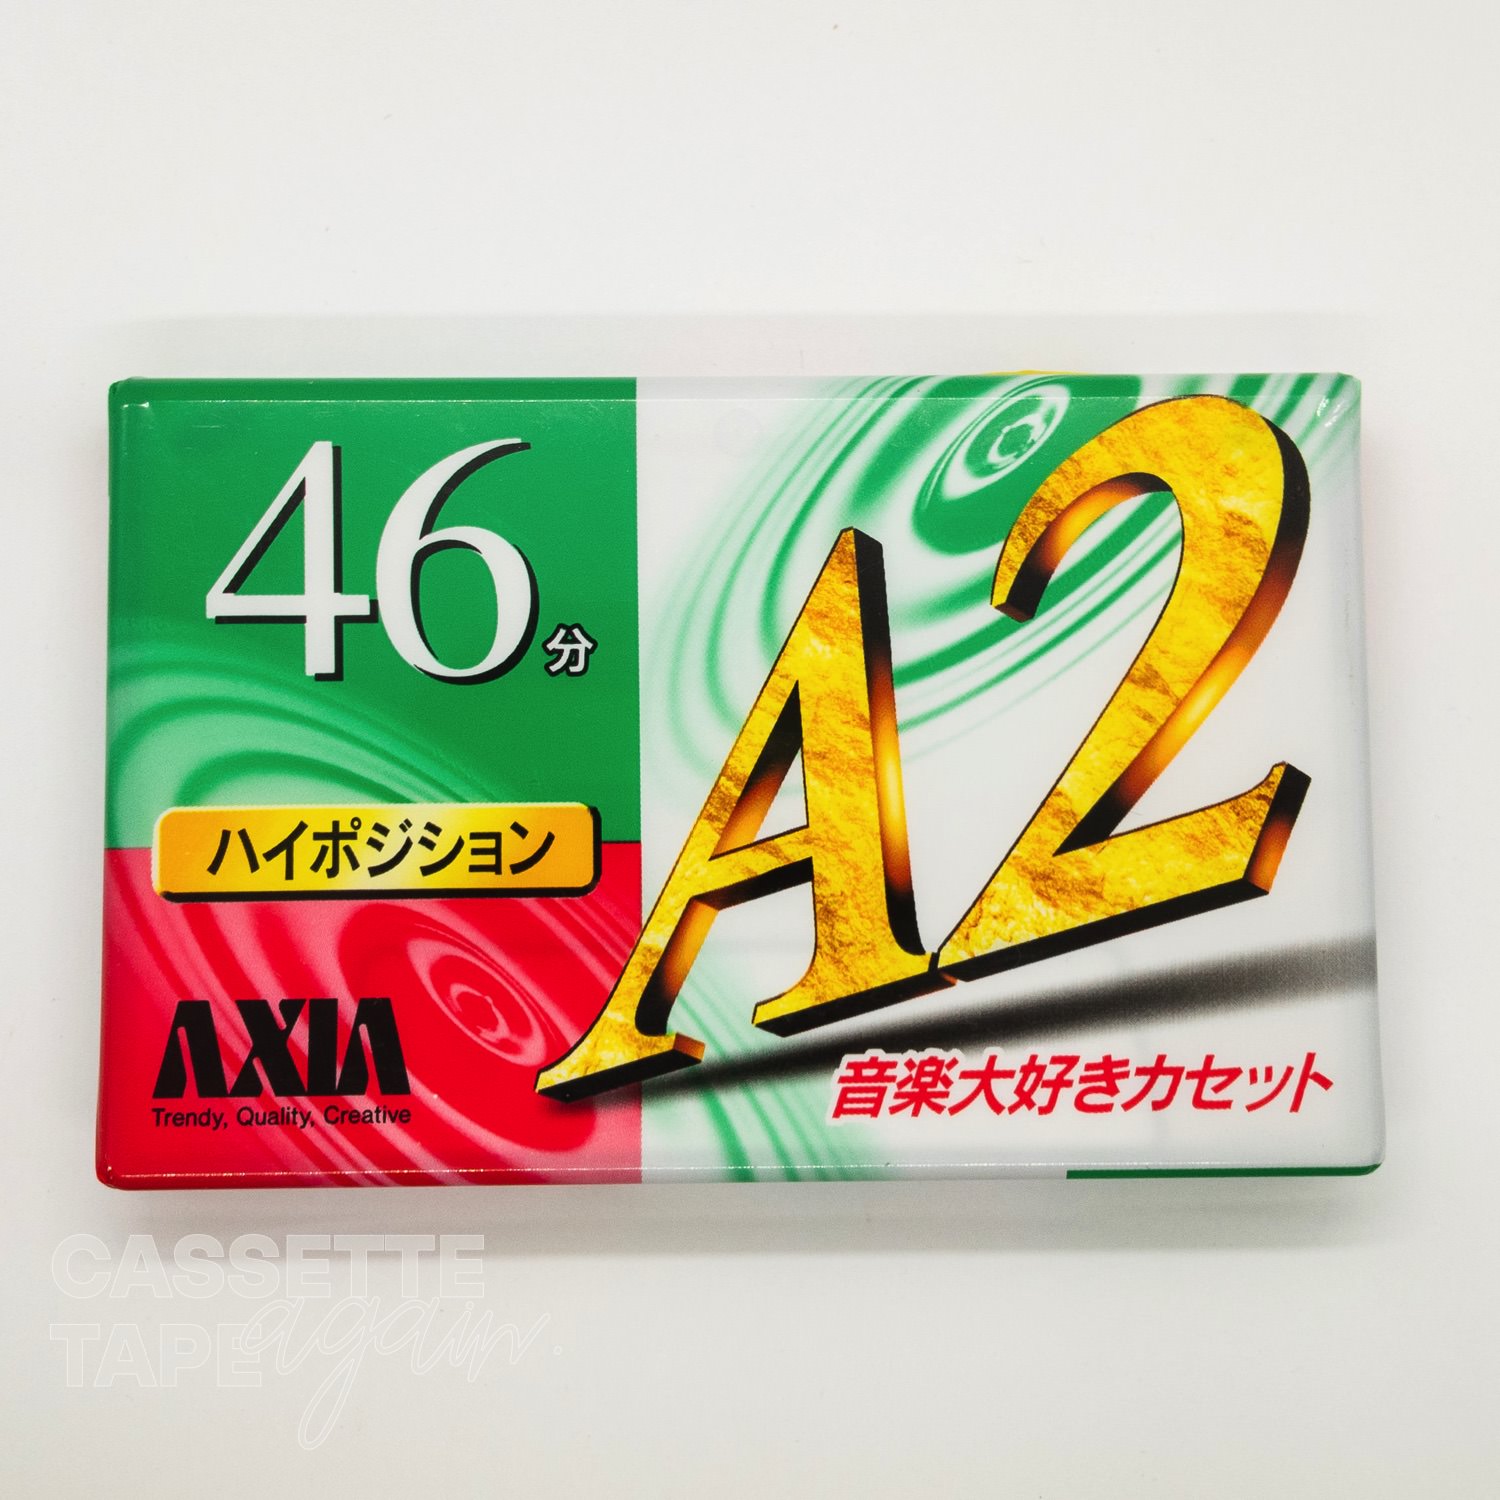 A2 46 / AXIA/FUJI(ハイポジ)